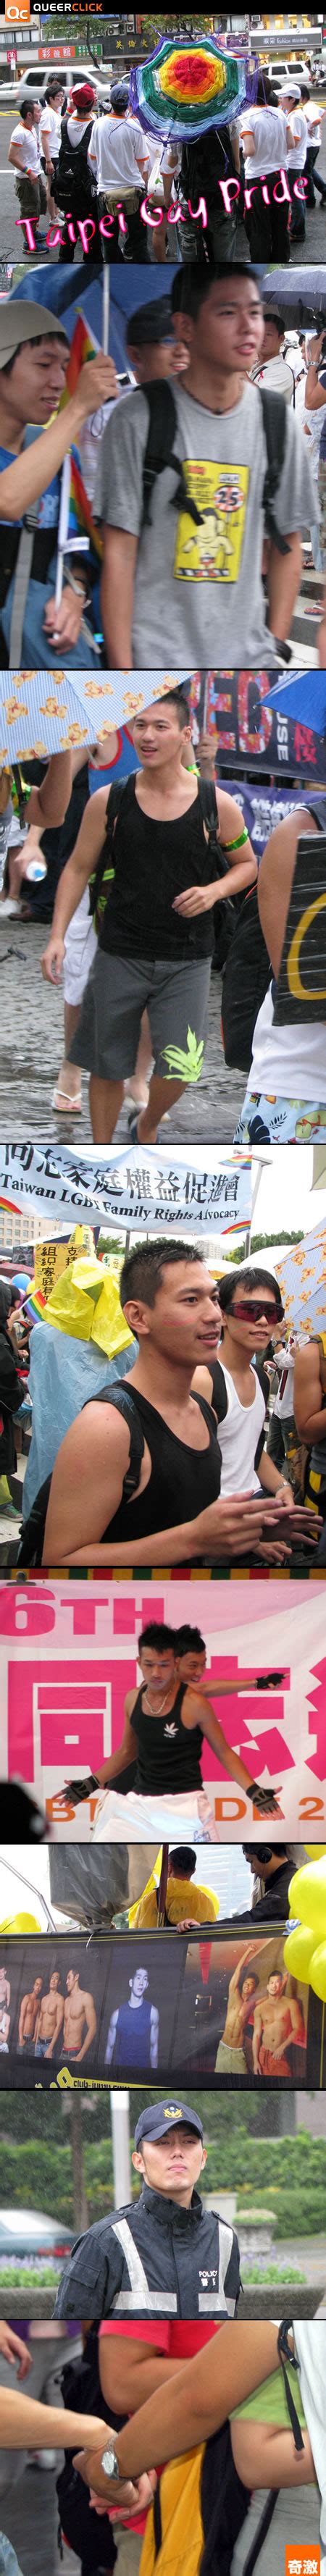 Taipei Gay Pride 2008 Part 3 QueerClick